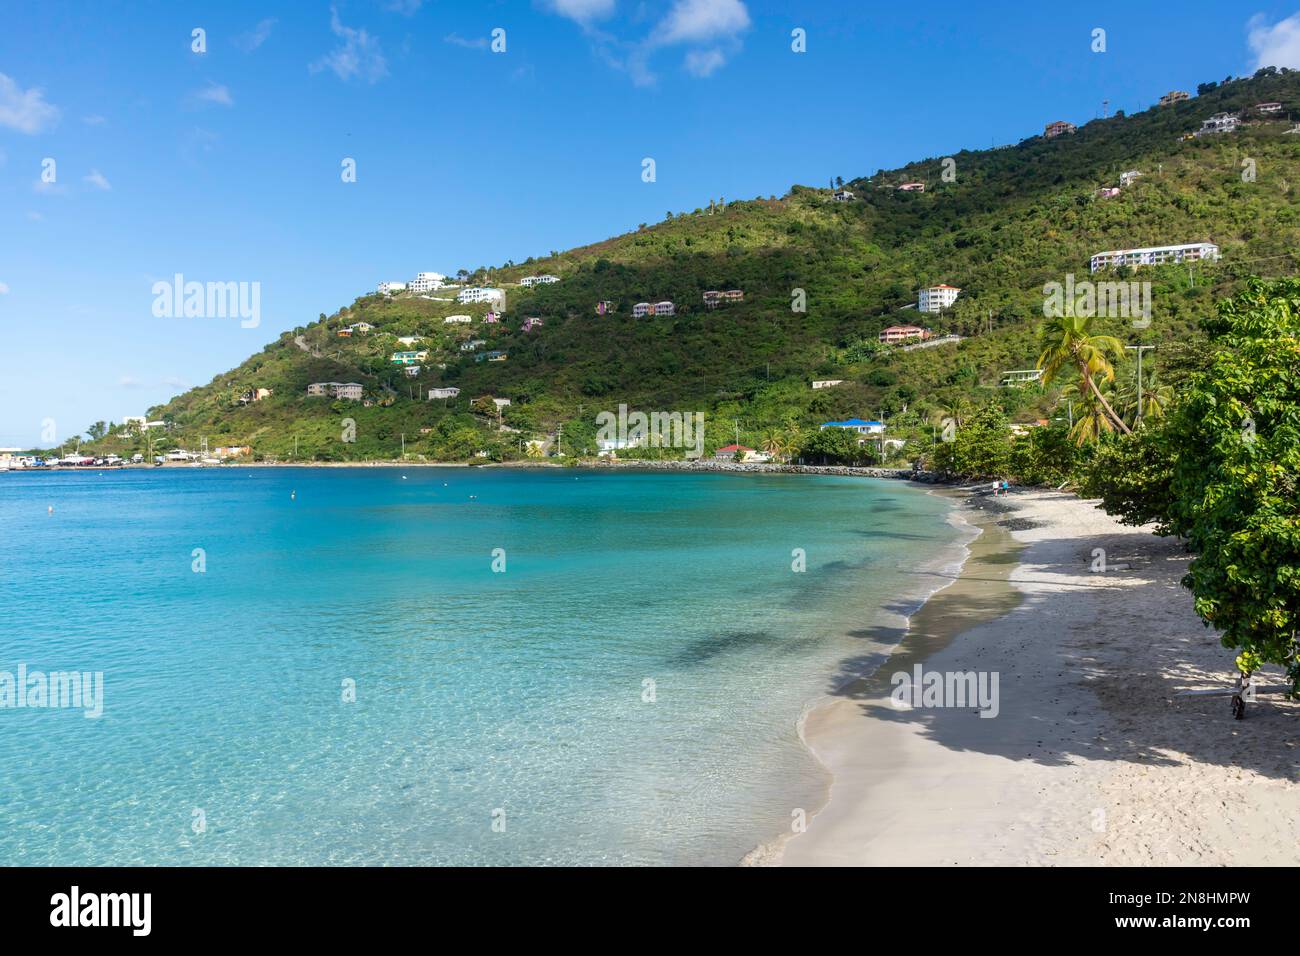 Blick auf das Strandresort, Cane Garden Bay, Tortola, die Britischen Jungferninseln (BVI), kleine Antillen, Karibik Stockfoto